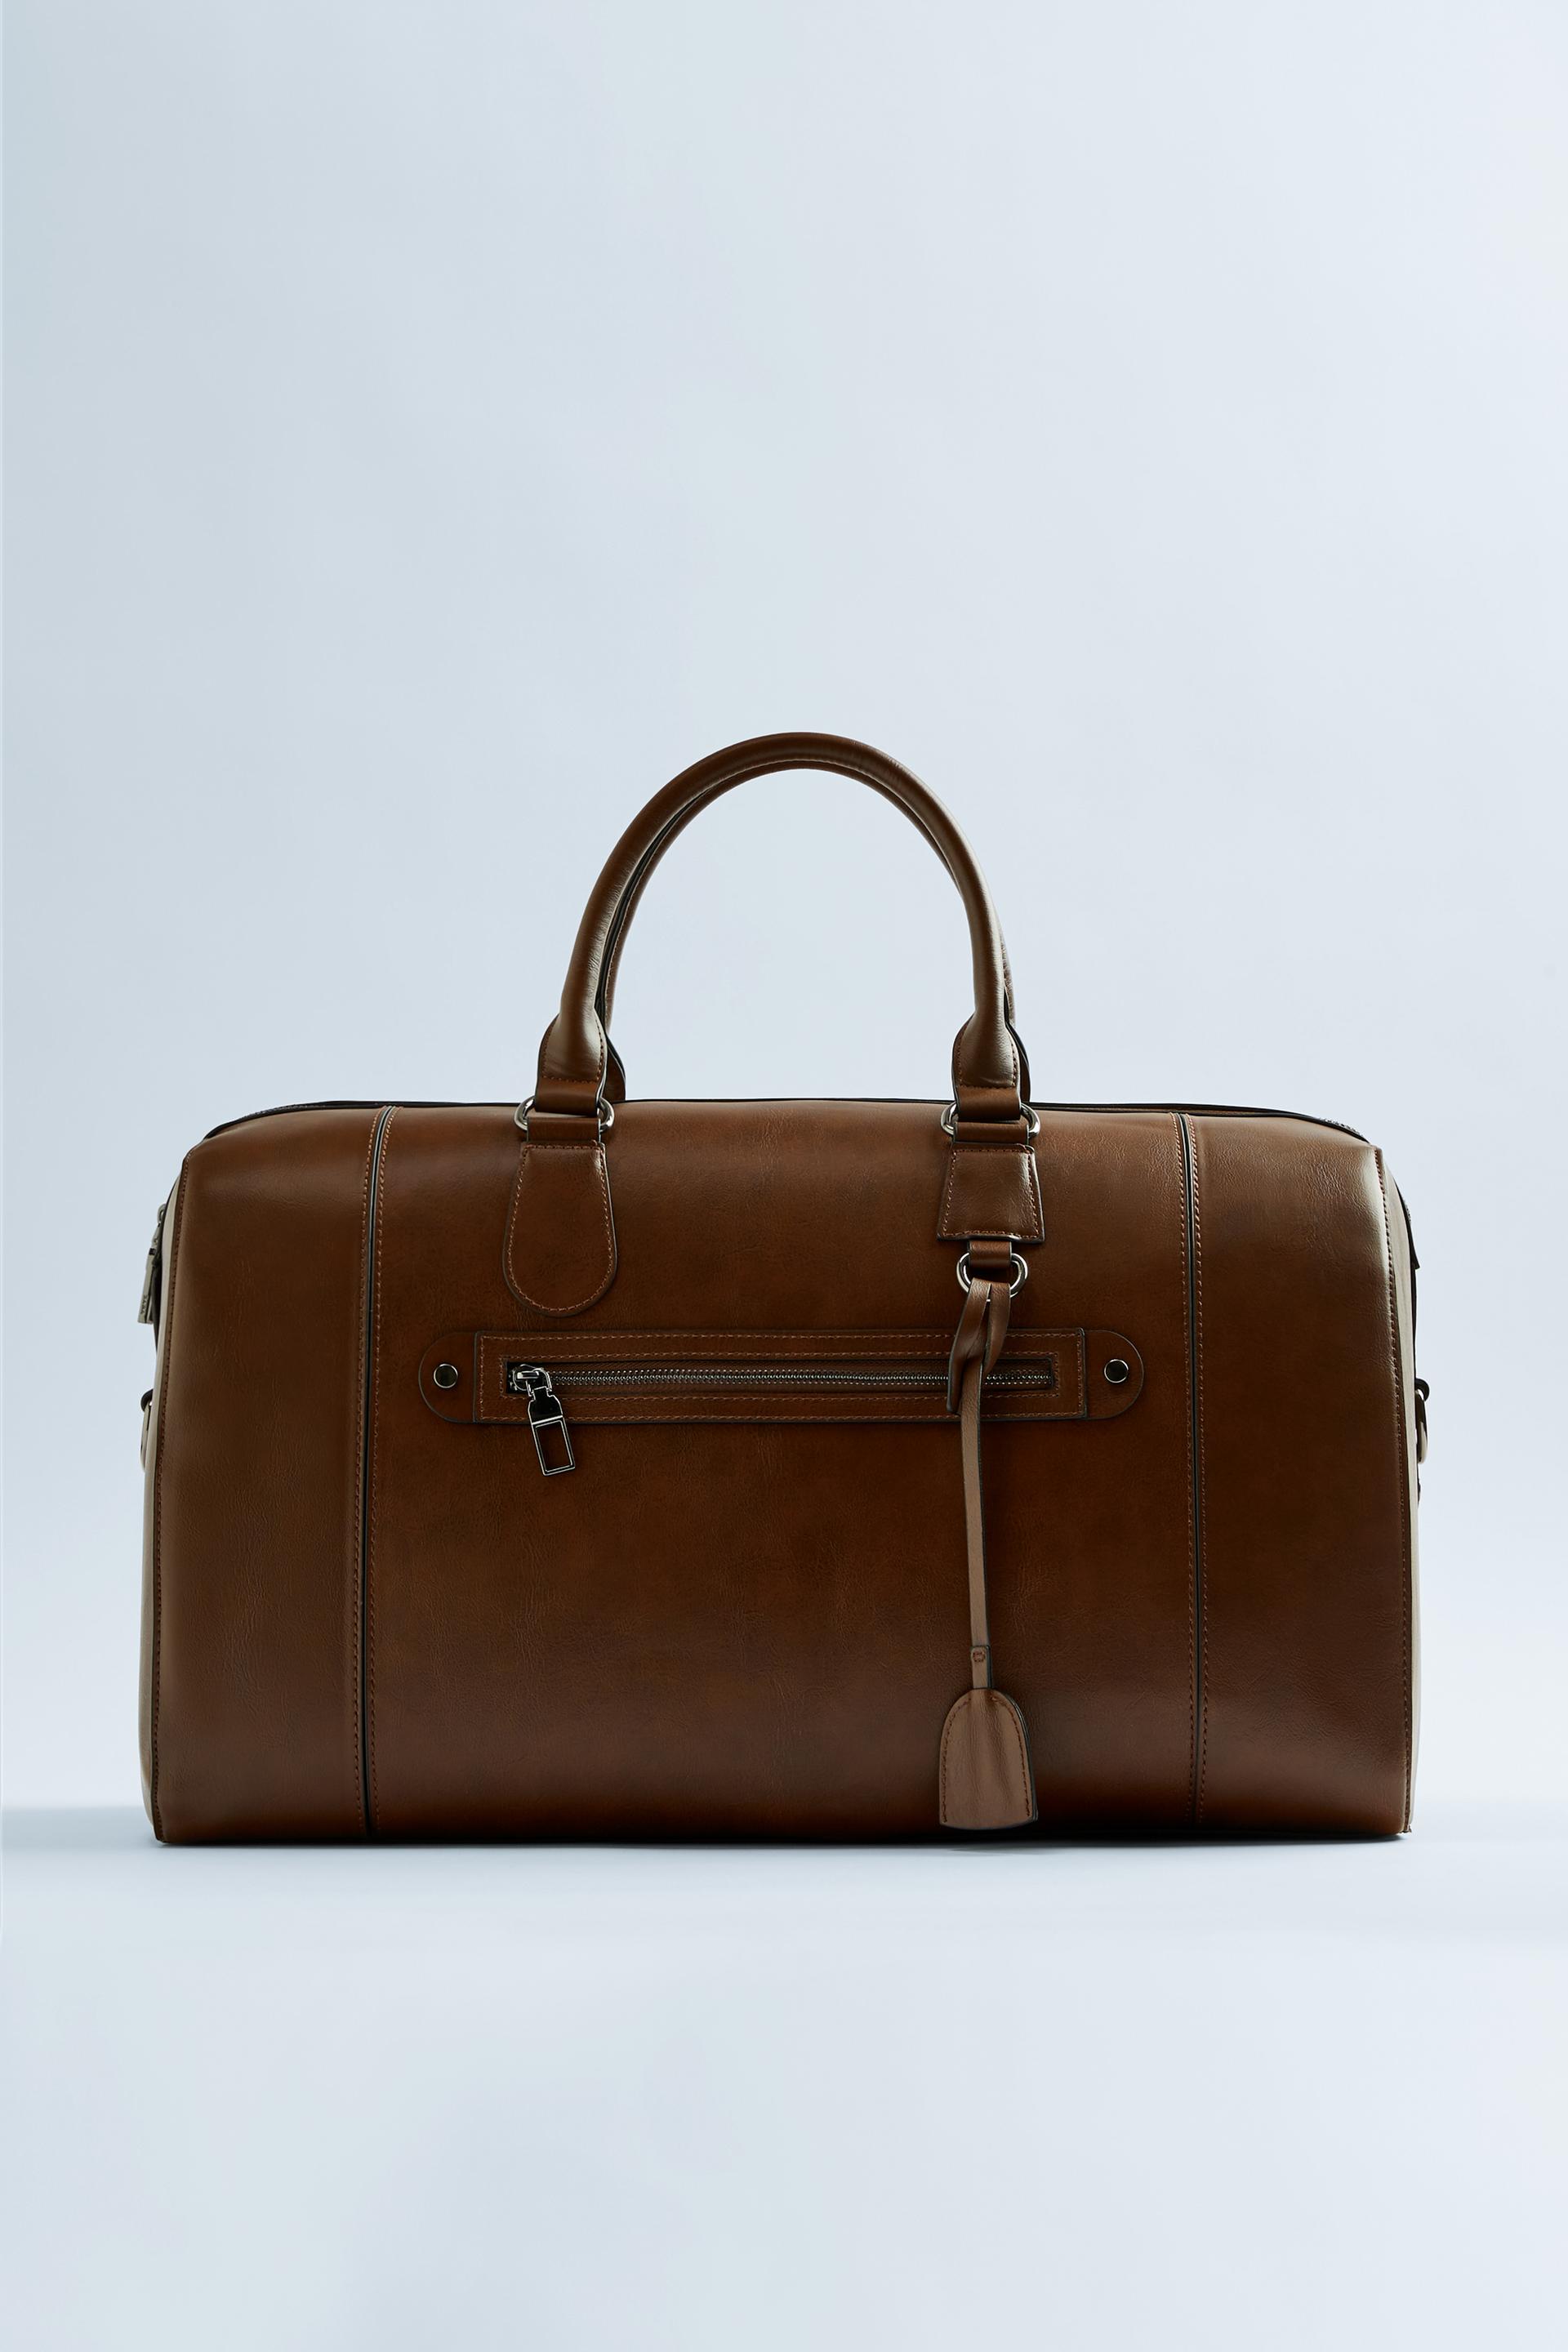 коричневая дорожная сумка в минималистском стиле ЦВЕТ ВЫДЕЛАННОЙ КОЖИ Zara